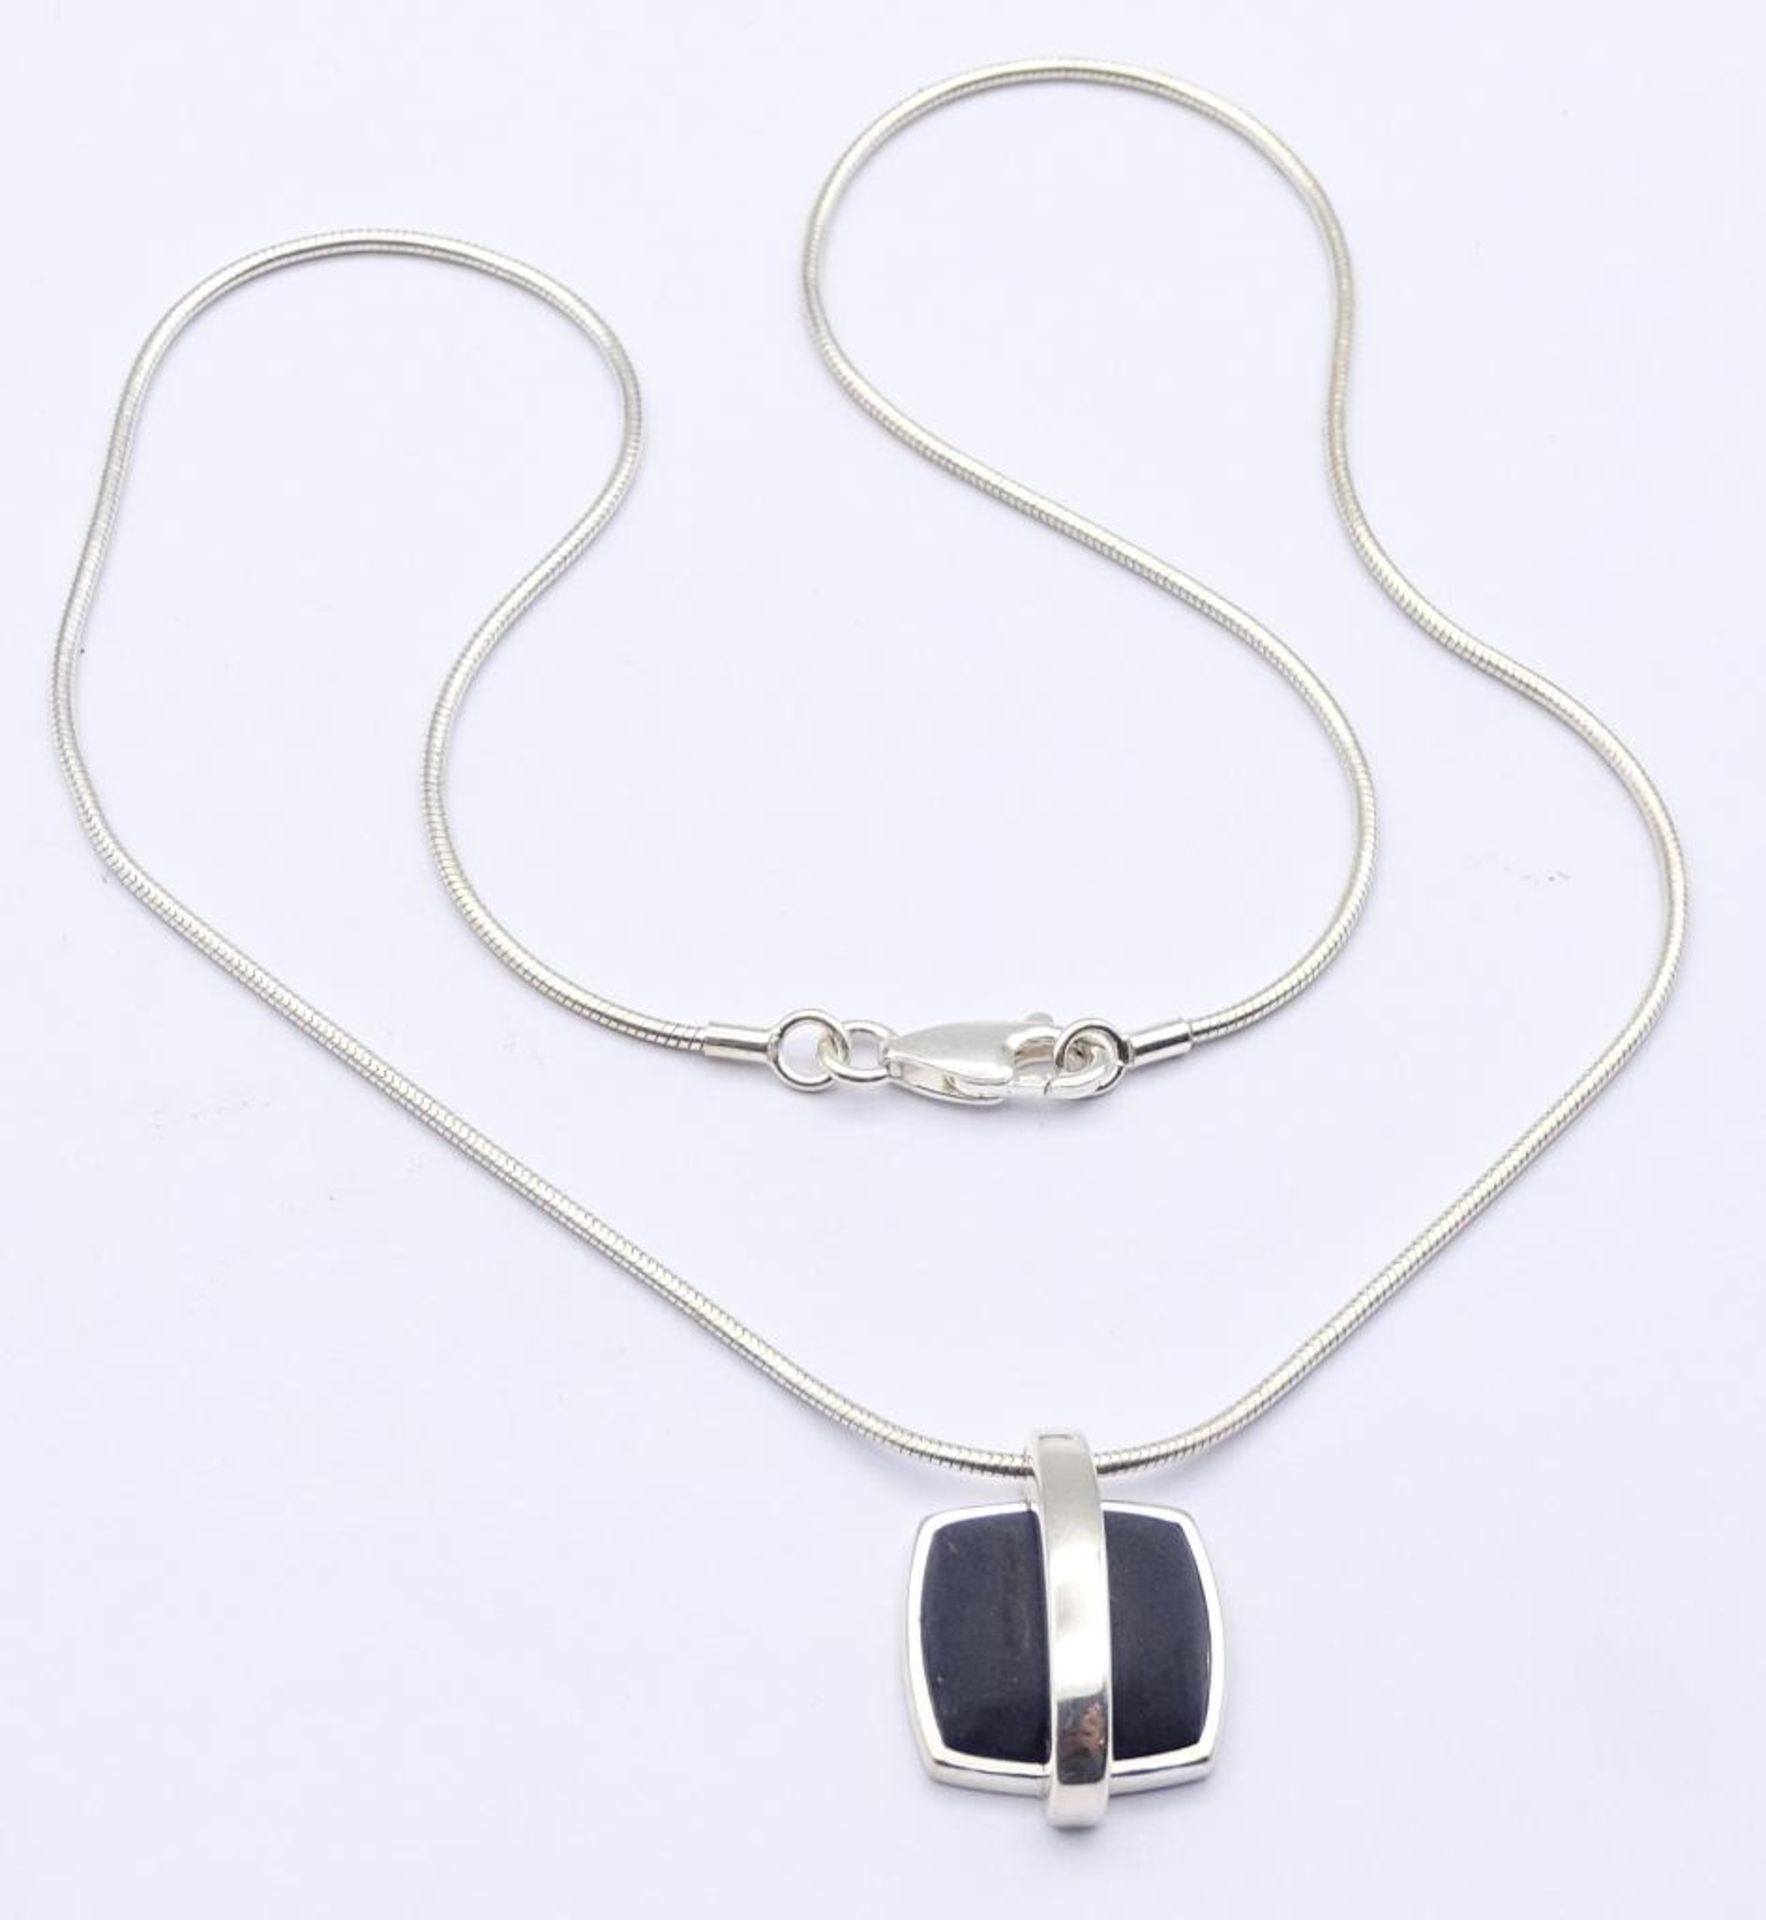 Halskette "Esprit",Silber 925/000 mit einen schwarzen Stein,ca.L- 42cm,zus.11gr.,Verschluss lose